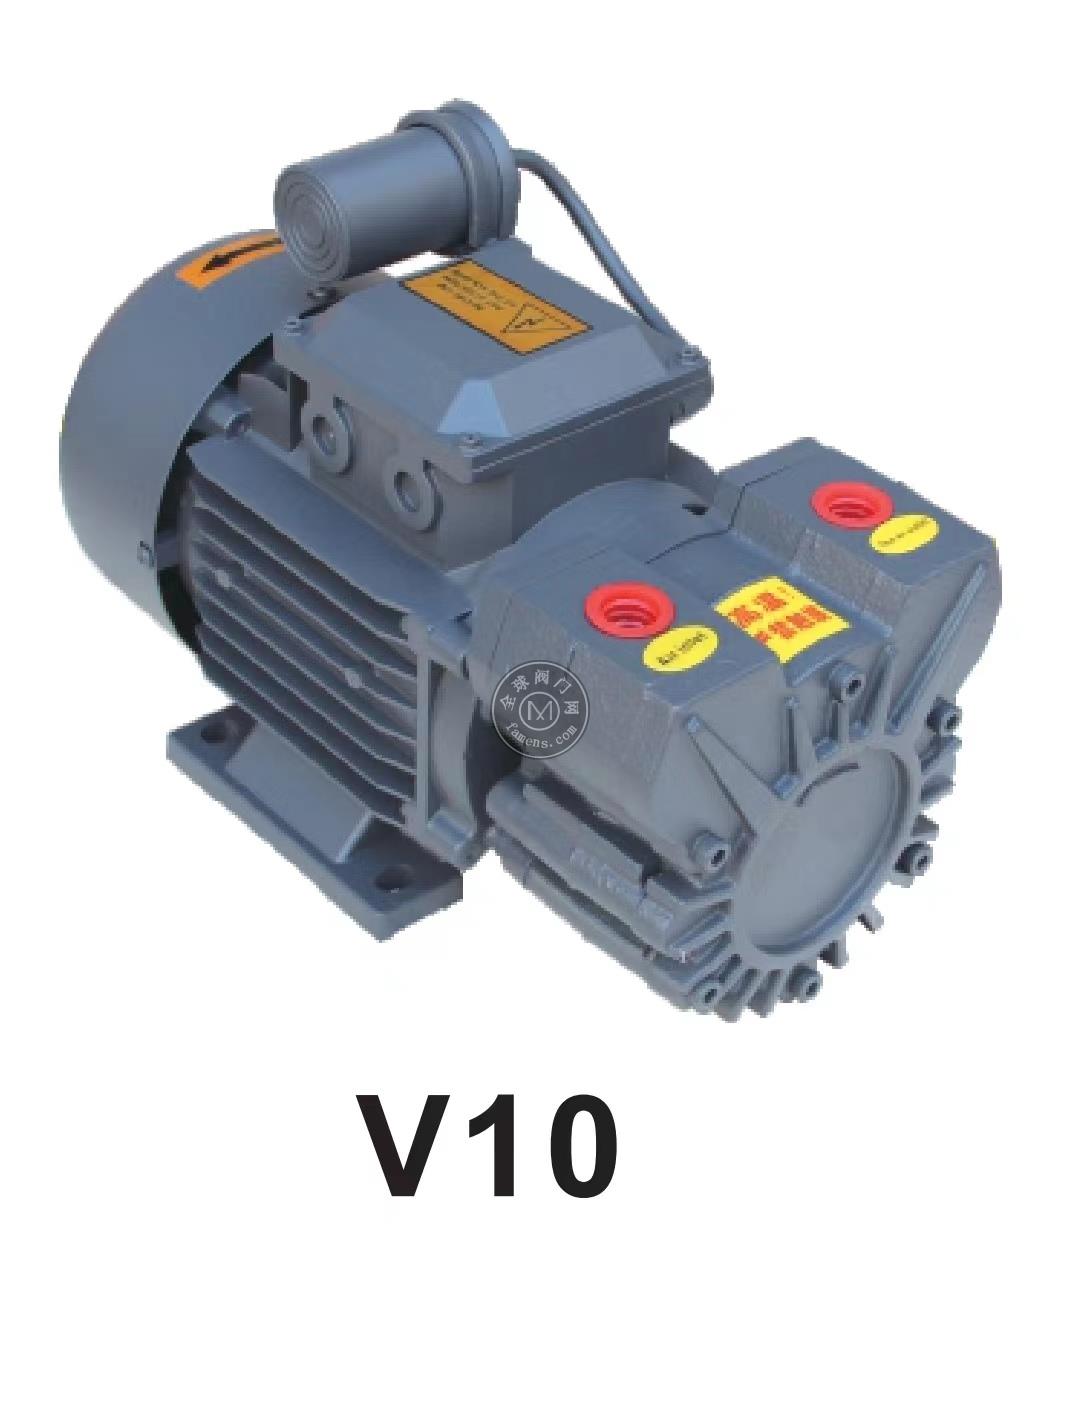 V10真空泵 機械手真空泵 自動化真空泵 SMT真空泵